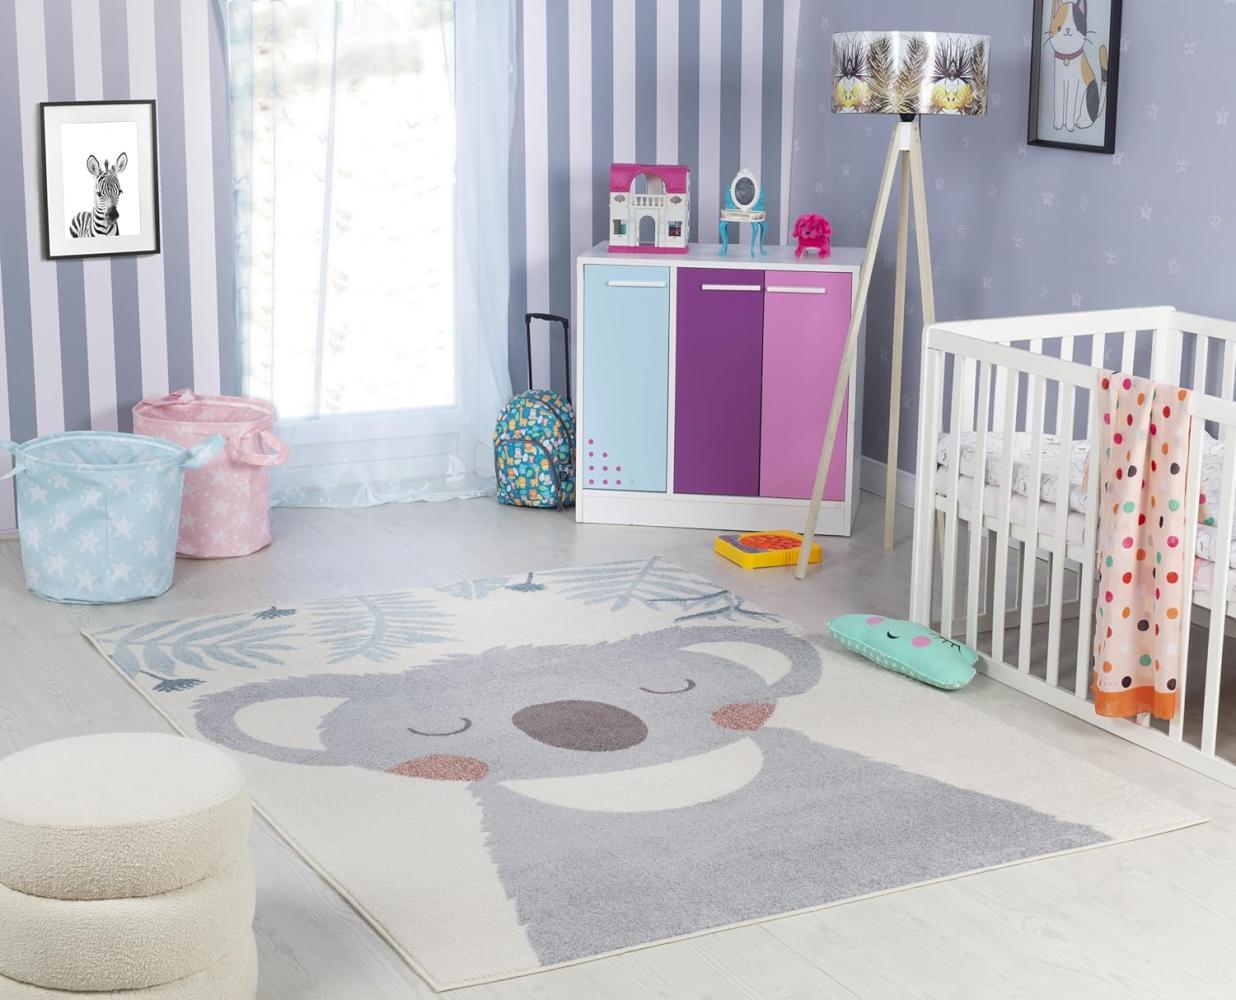 Surya Koala Kinderteppich - Cartoon Teppich Kinderzimmer oder Babyzimmer, Kinderzimmerteppich, Krabbelteppich oder Spielteppich - Baby Teppich für Jungen & Mädchen, Grau und Elfenbein 120x170cm Bild 1